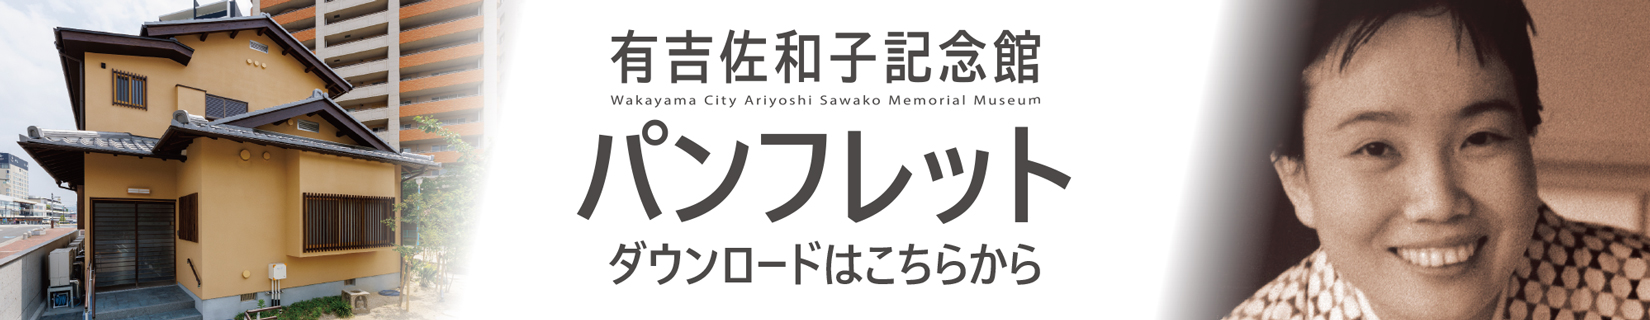 有吉佐和子記念館のパンレットのpdfファイルへのリンク